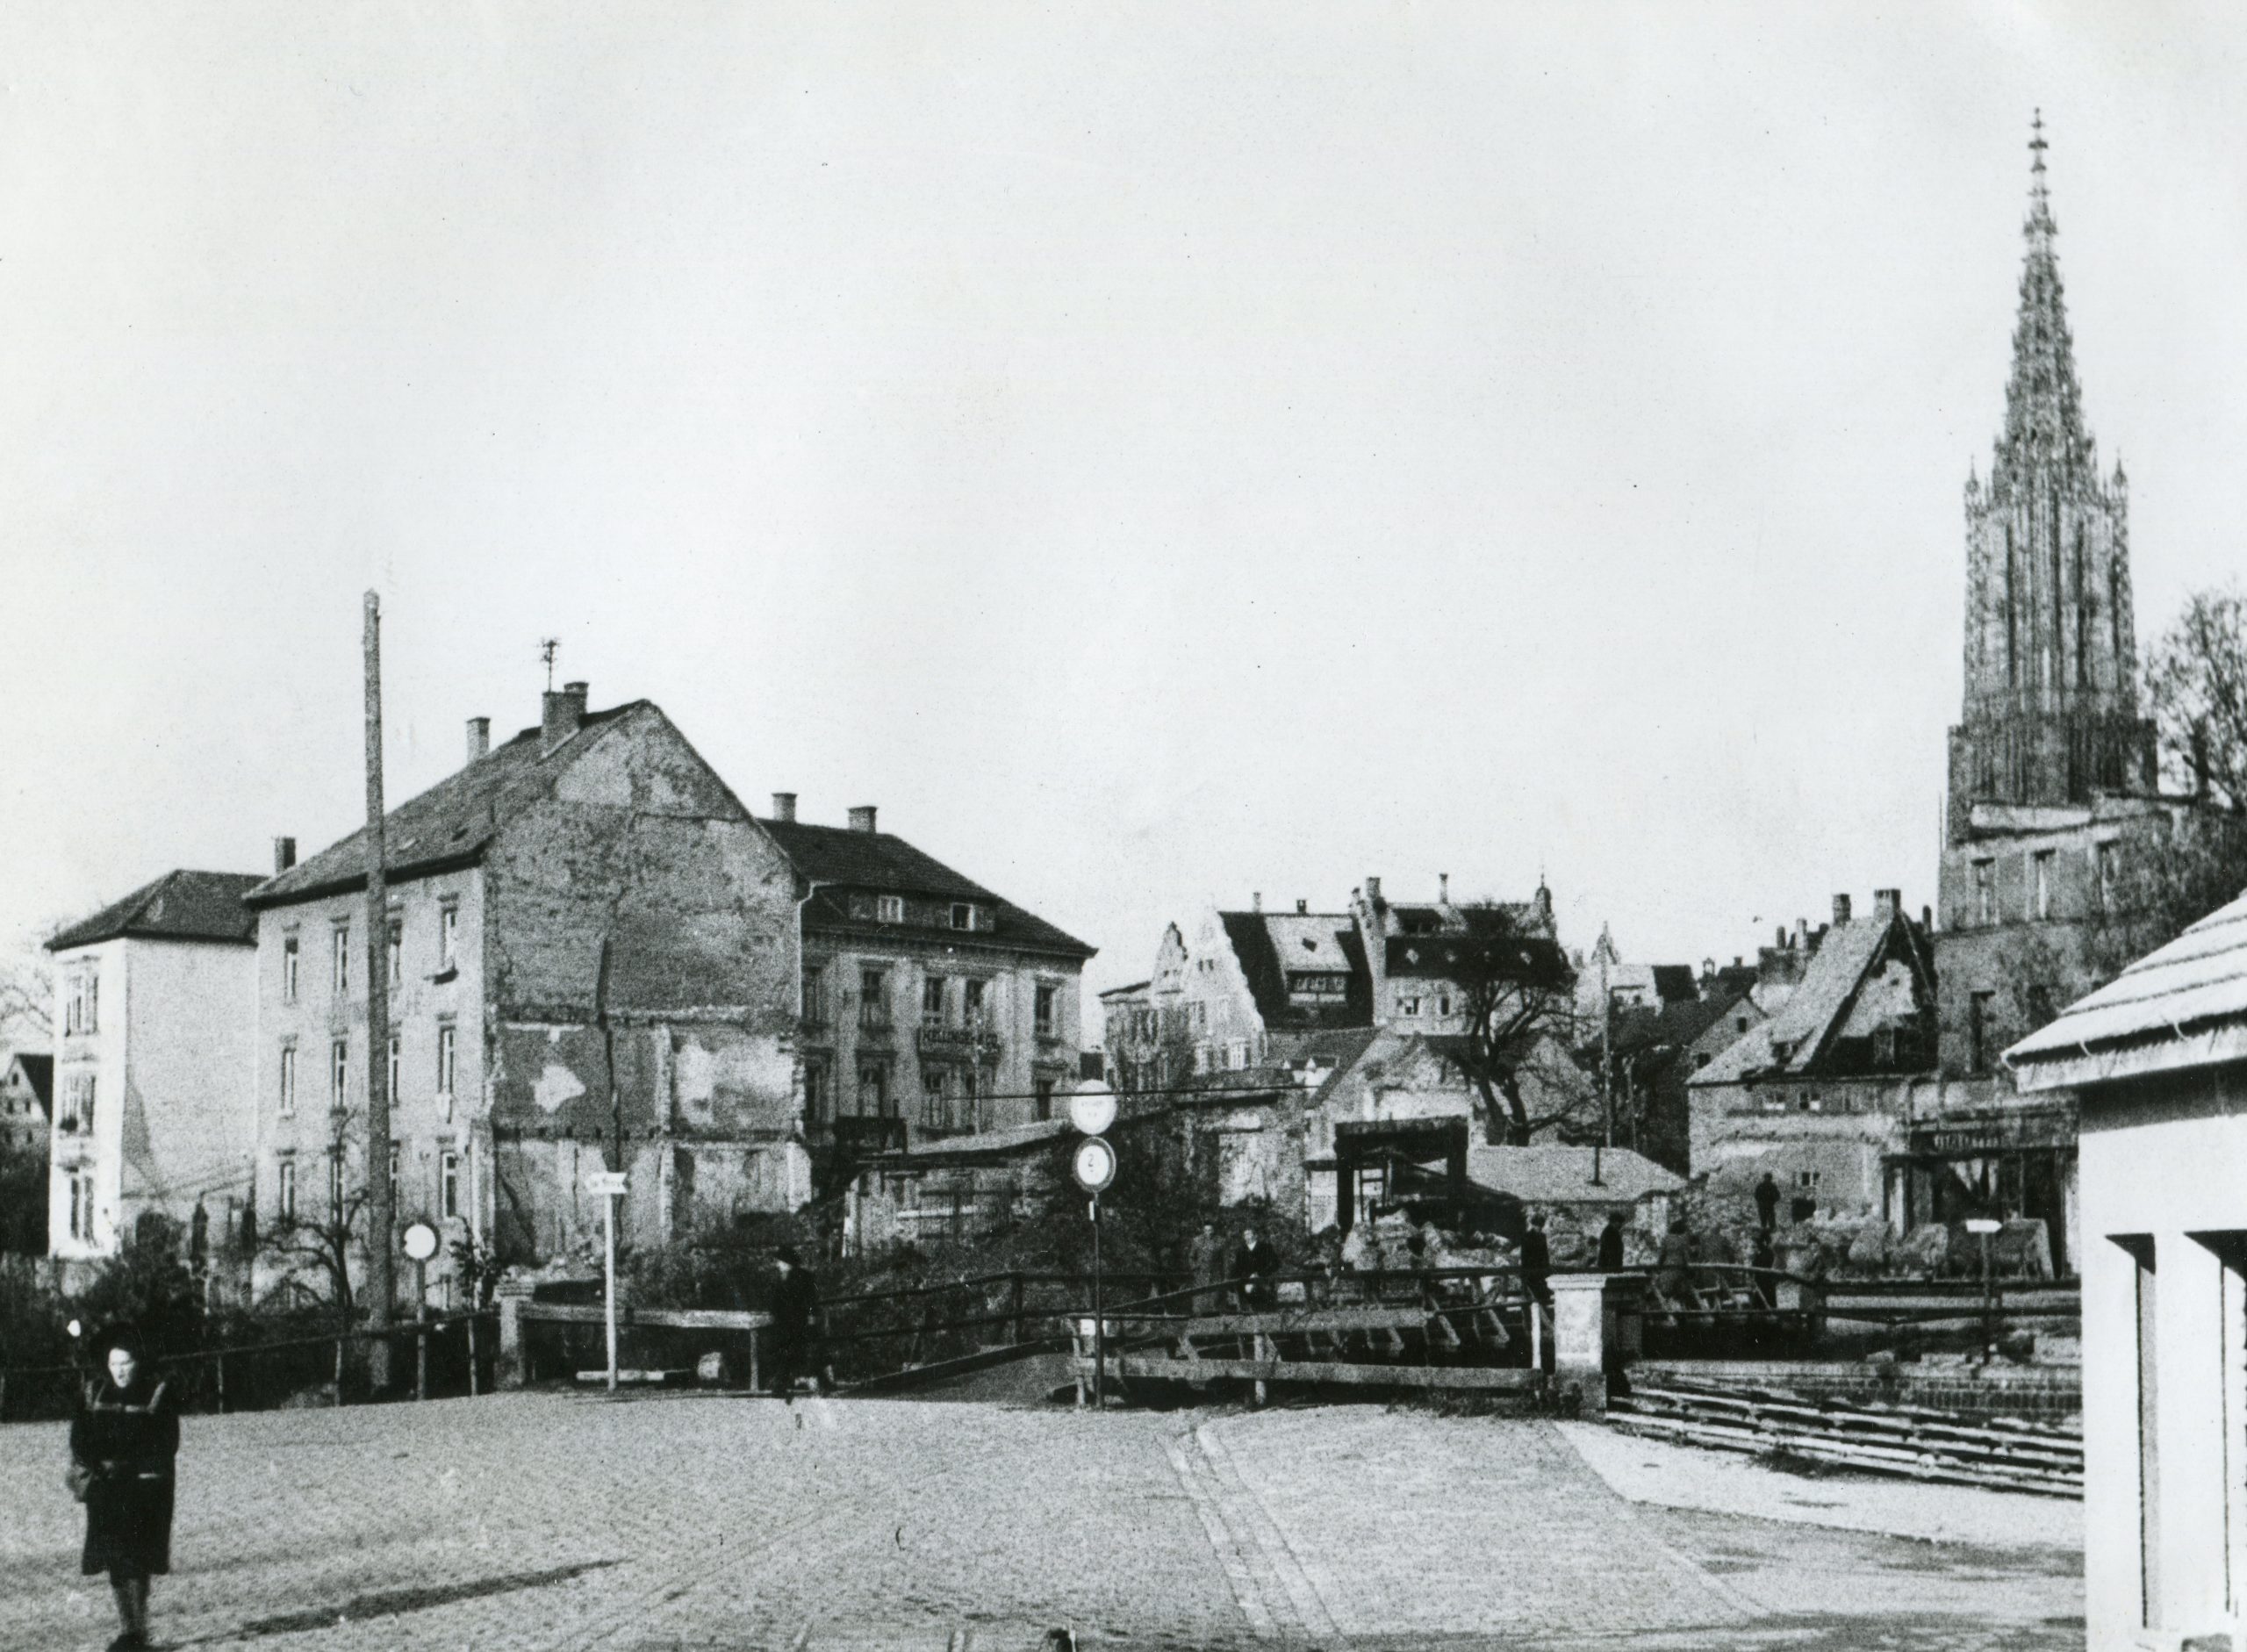 Großteils schon abgeräumte Ruinen auf der Insel mit provisorischer Holzbrücke. Die Häuser der linken Bildhälfte stehen heute noch. 1948, StANU